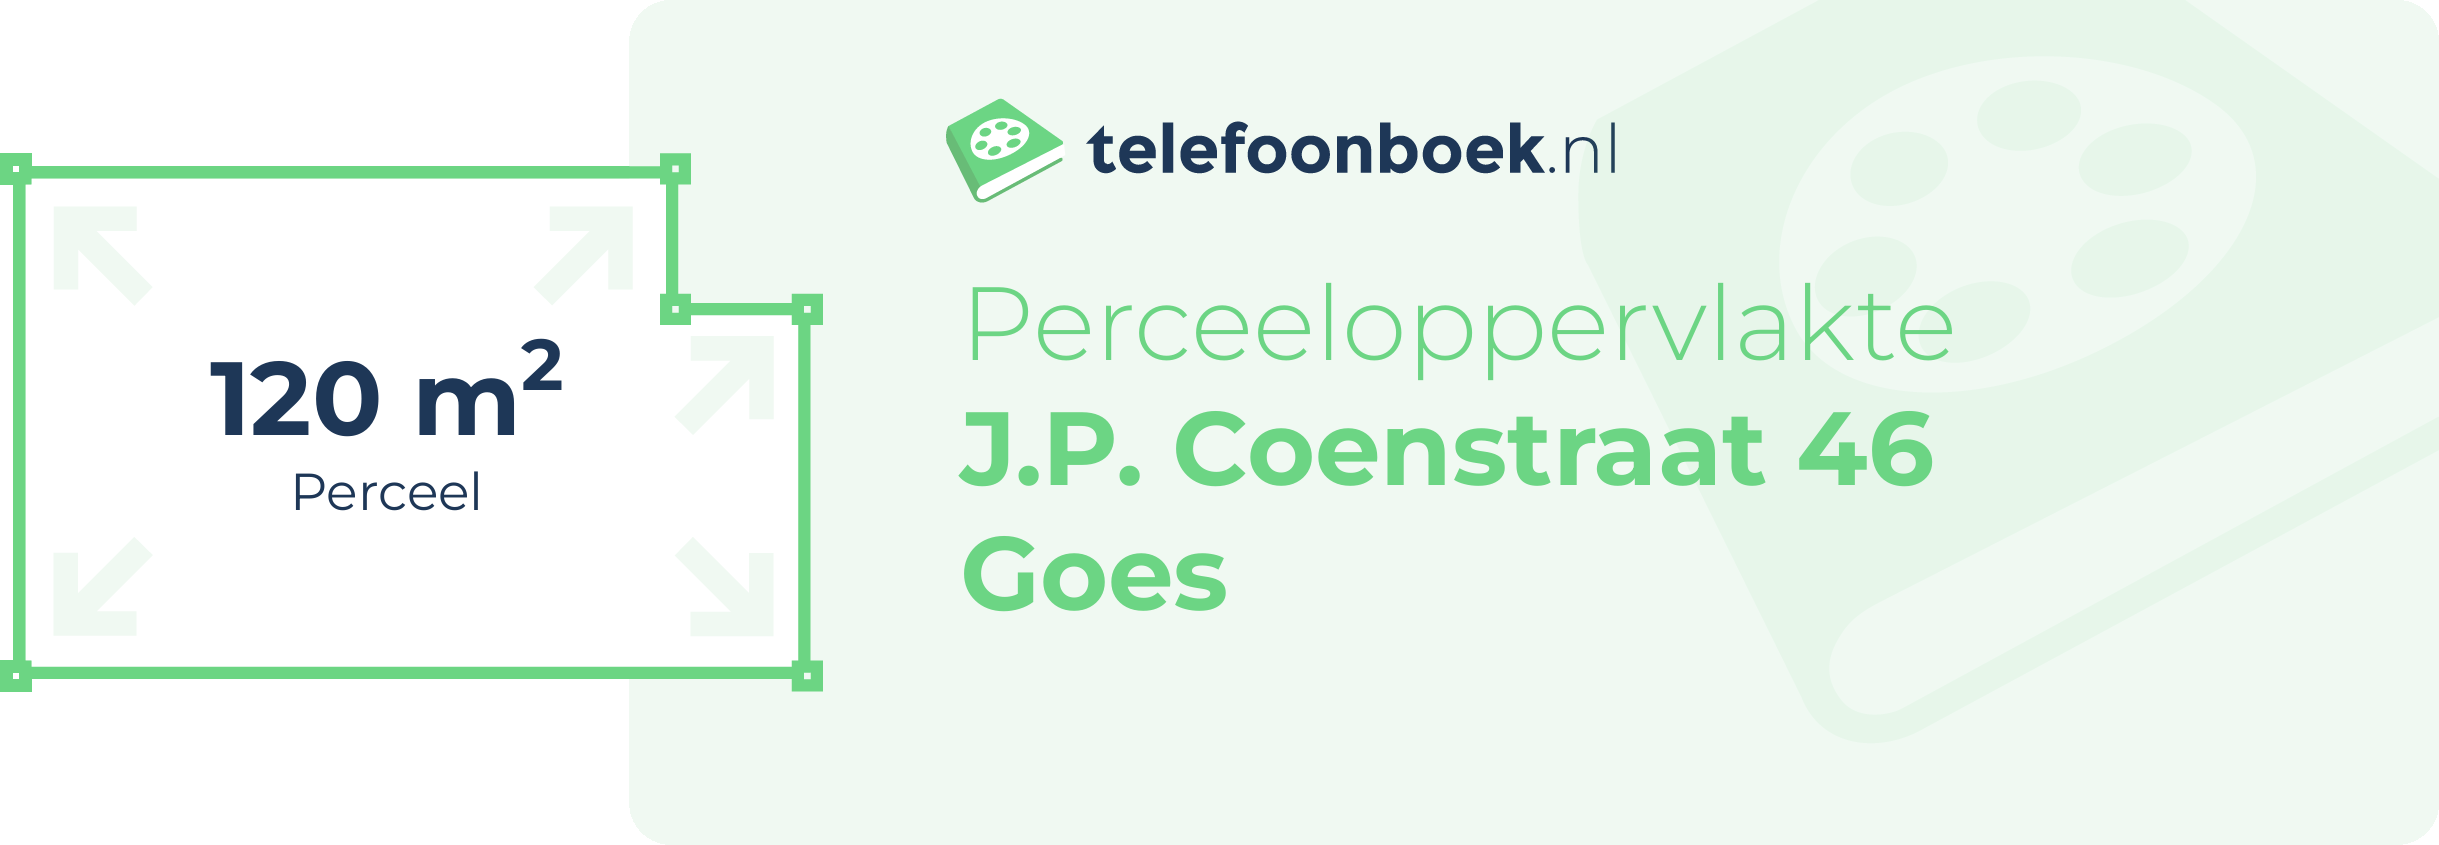 Perceeloppervlakte J.P. Coenstraat 46 Goes